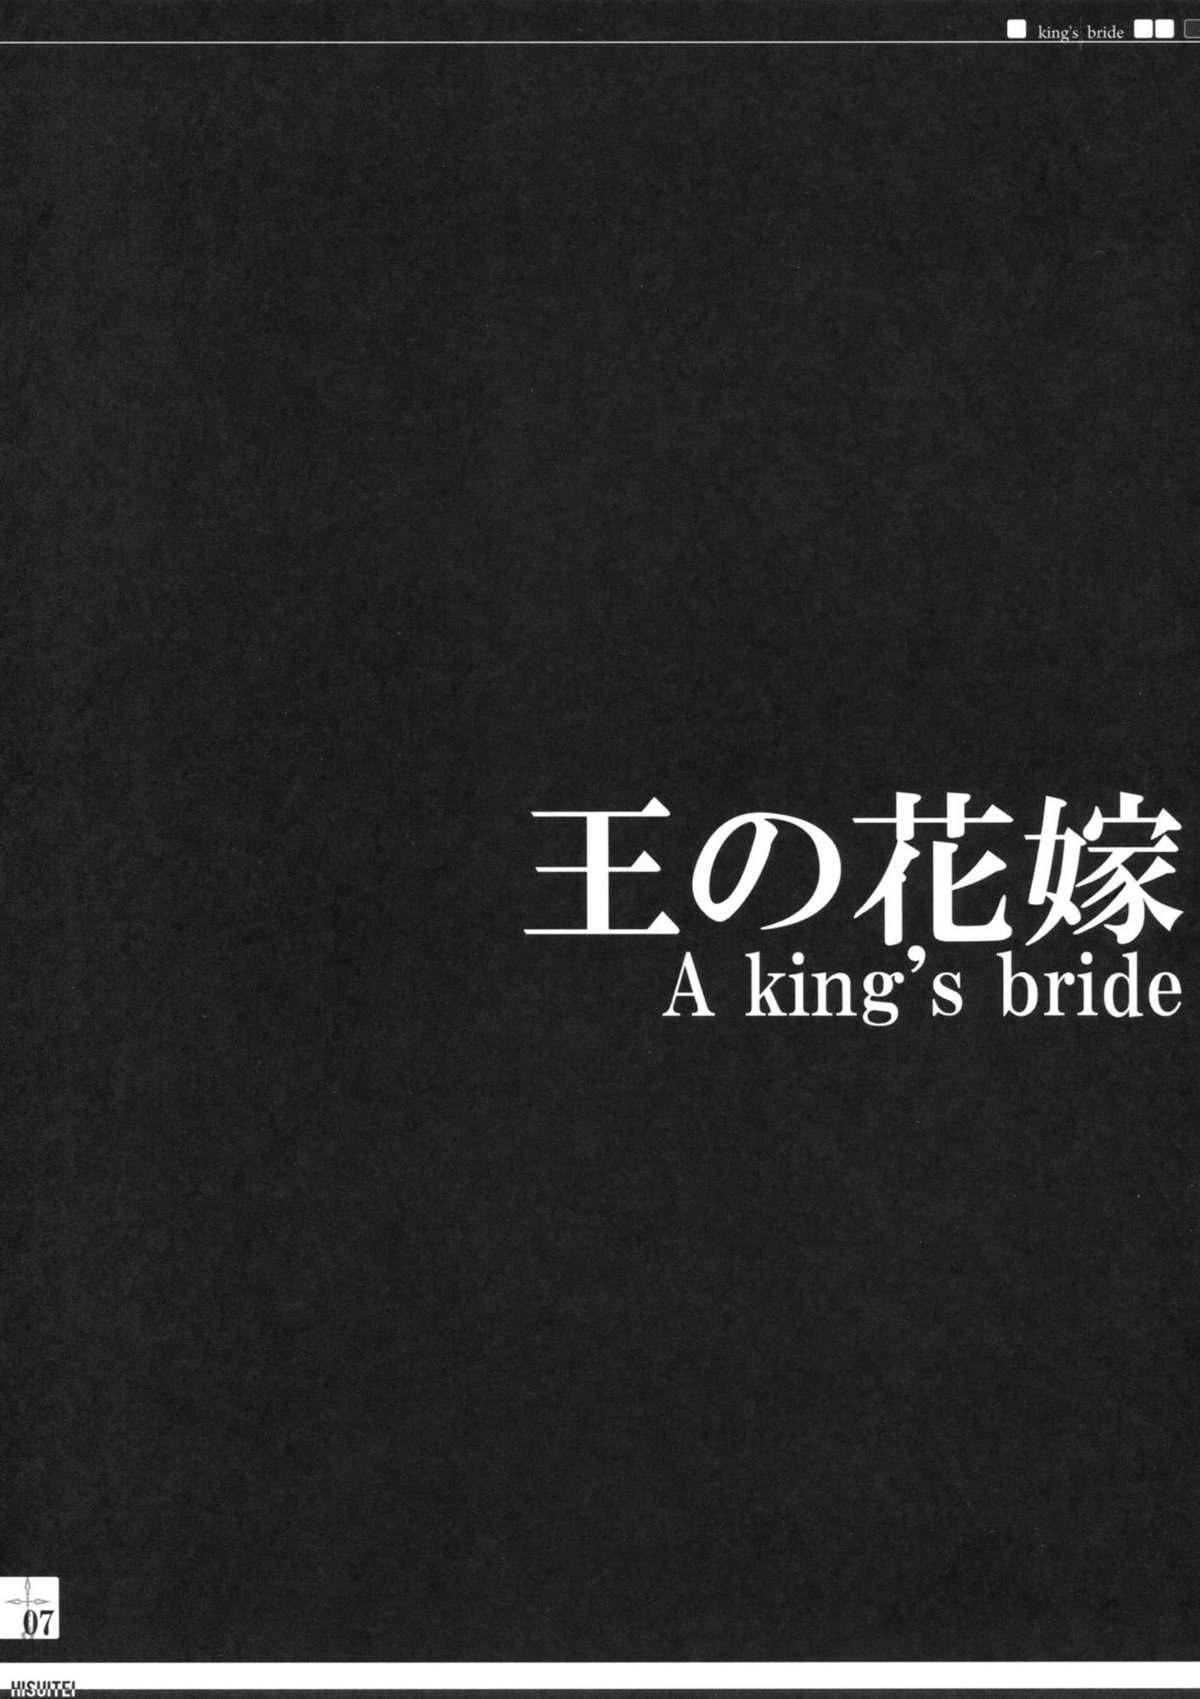 King's bride 5